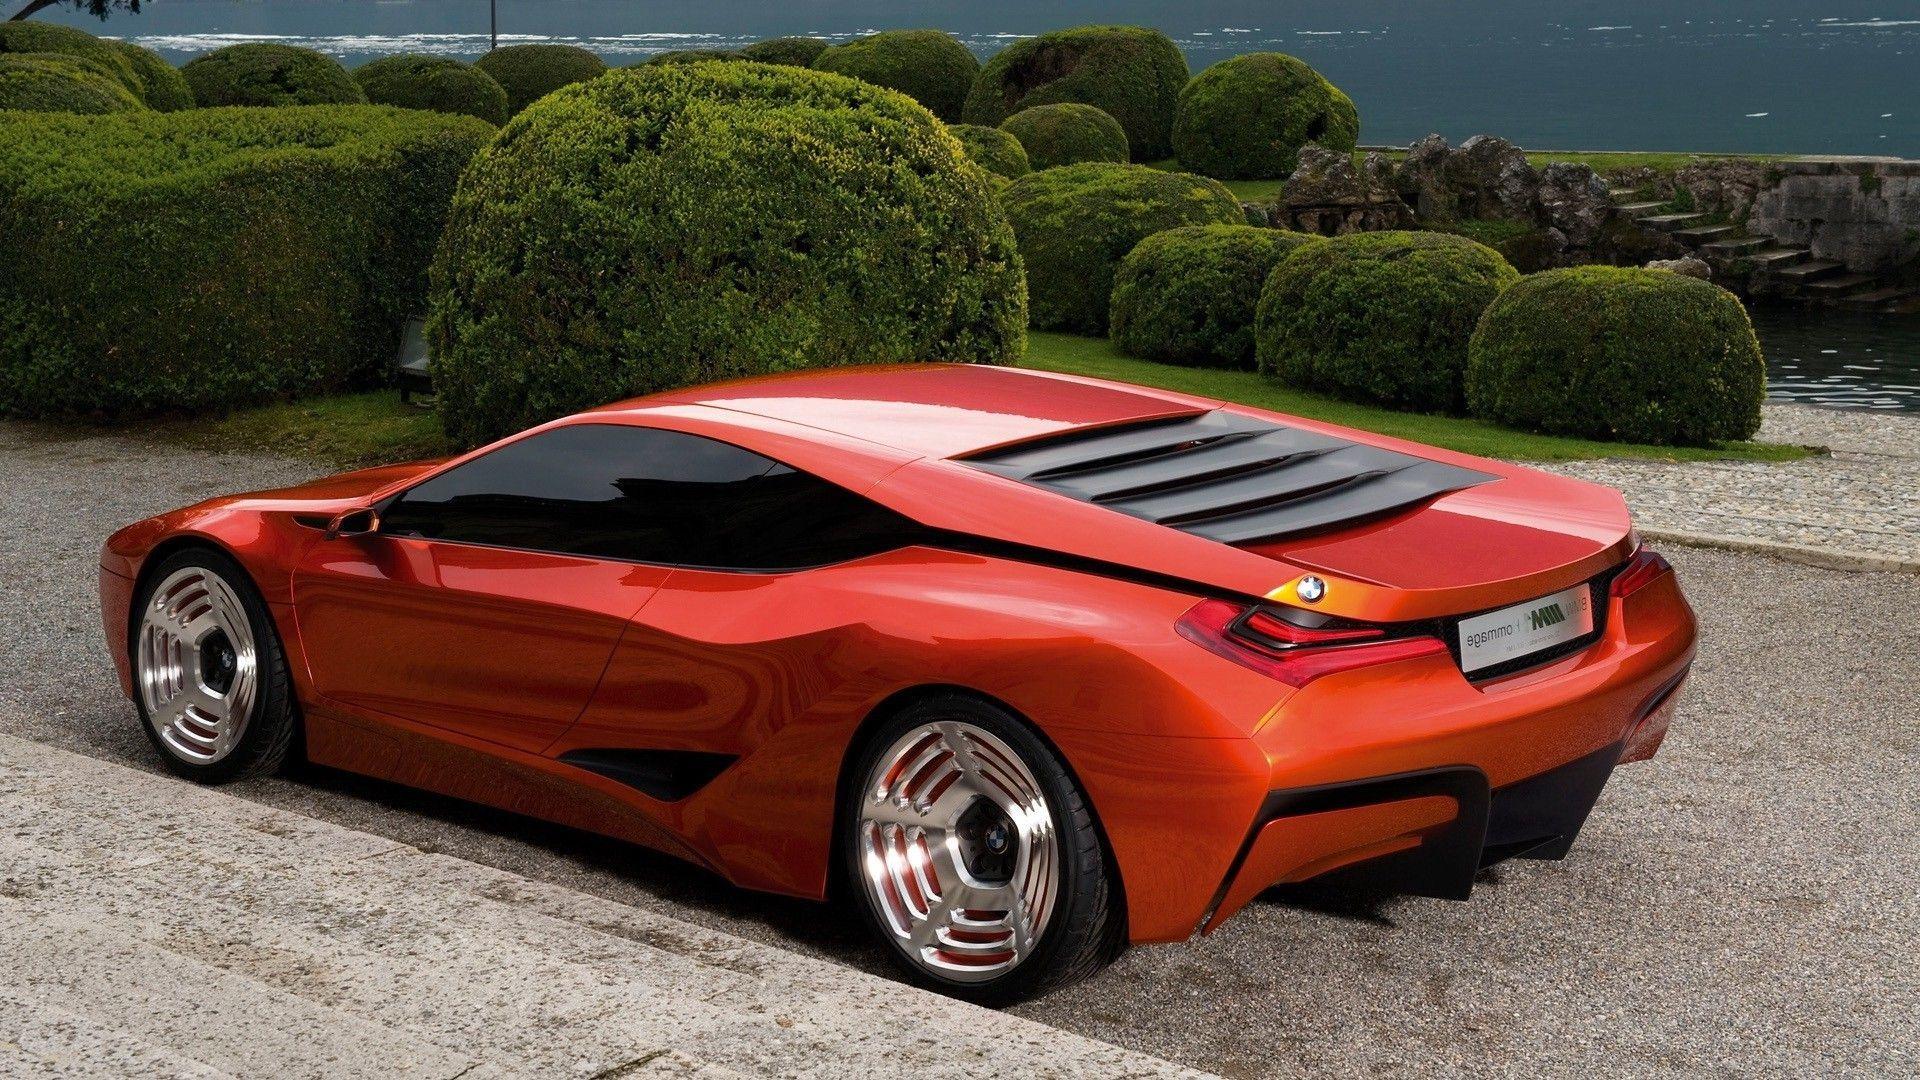 BMW_Concept_Car_HD_. Concept Cars. HD